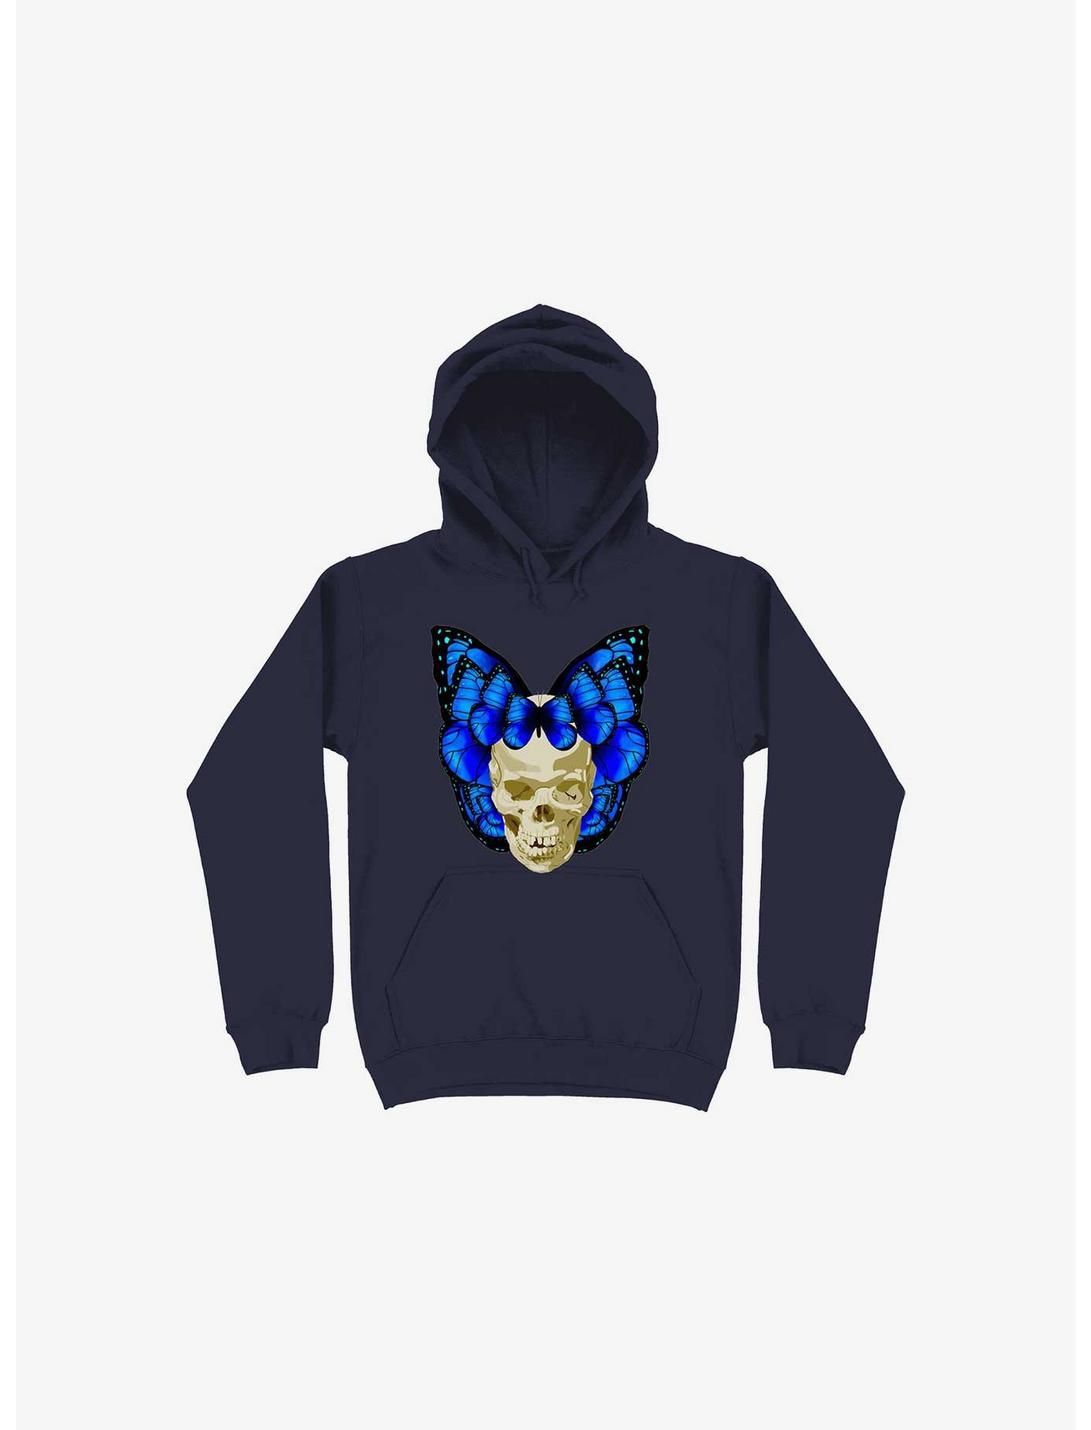 Wings Of Death Butterfly Skull Navy Blue Hoodie, NAVY, hi-res